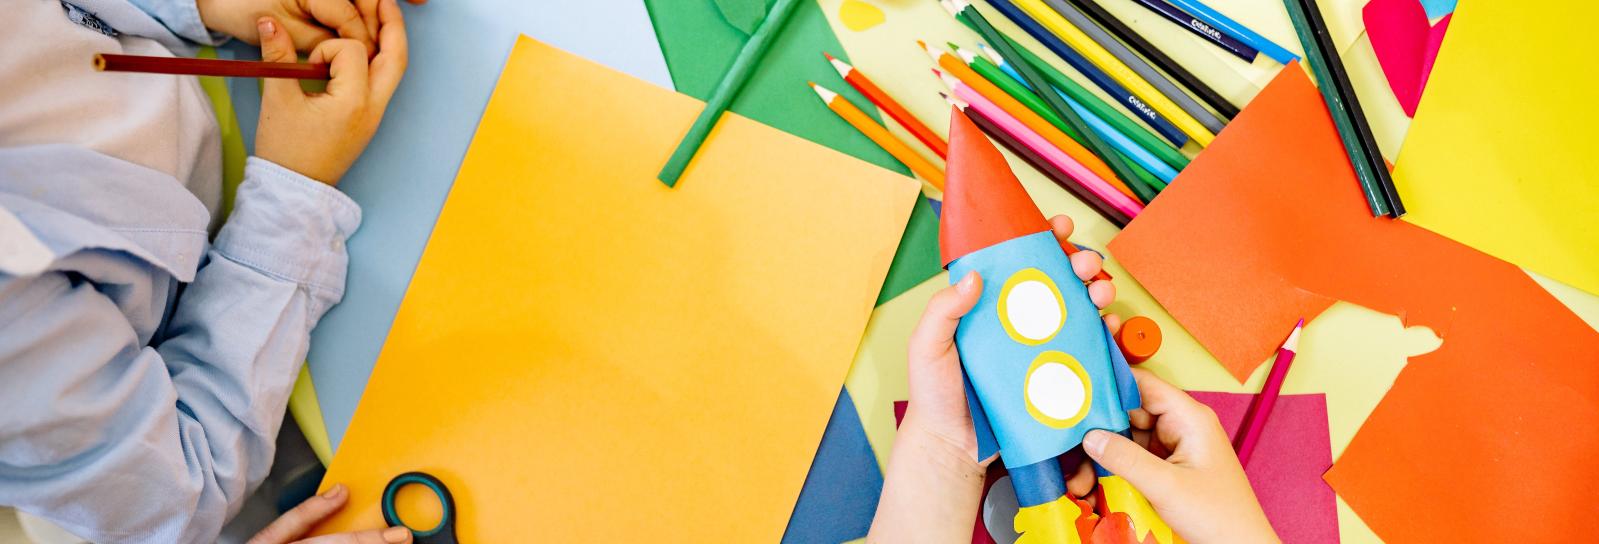 Børns hænder rundt om et børn med karton og farveblyanter. Nederst til højre er en person i gang med a lave en raket ud af karton.